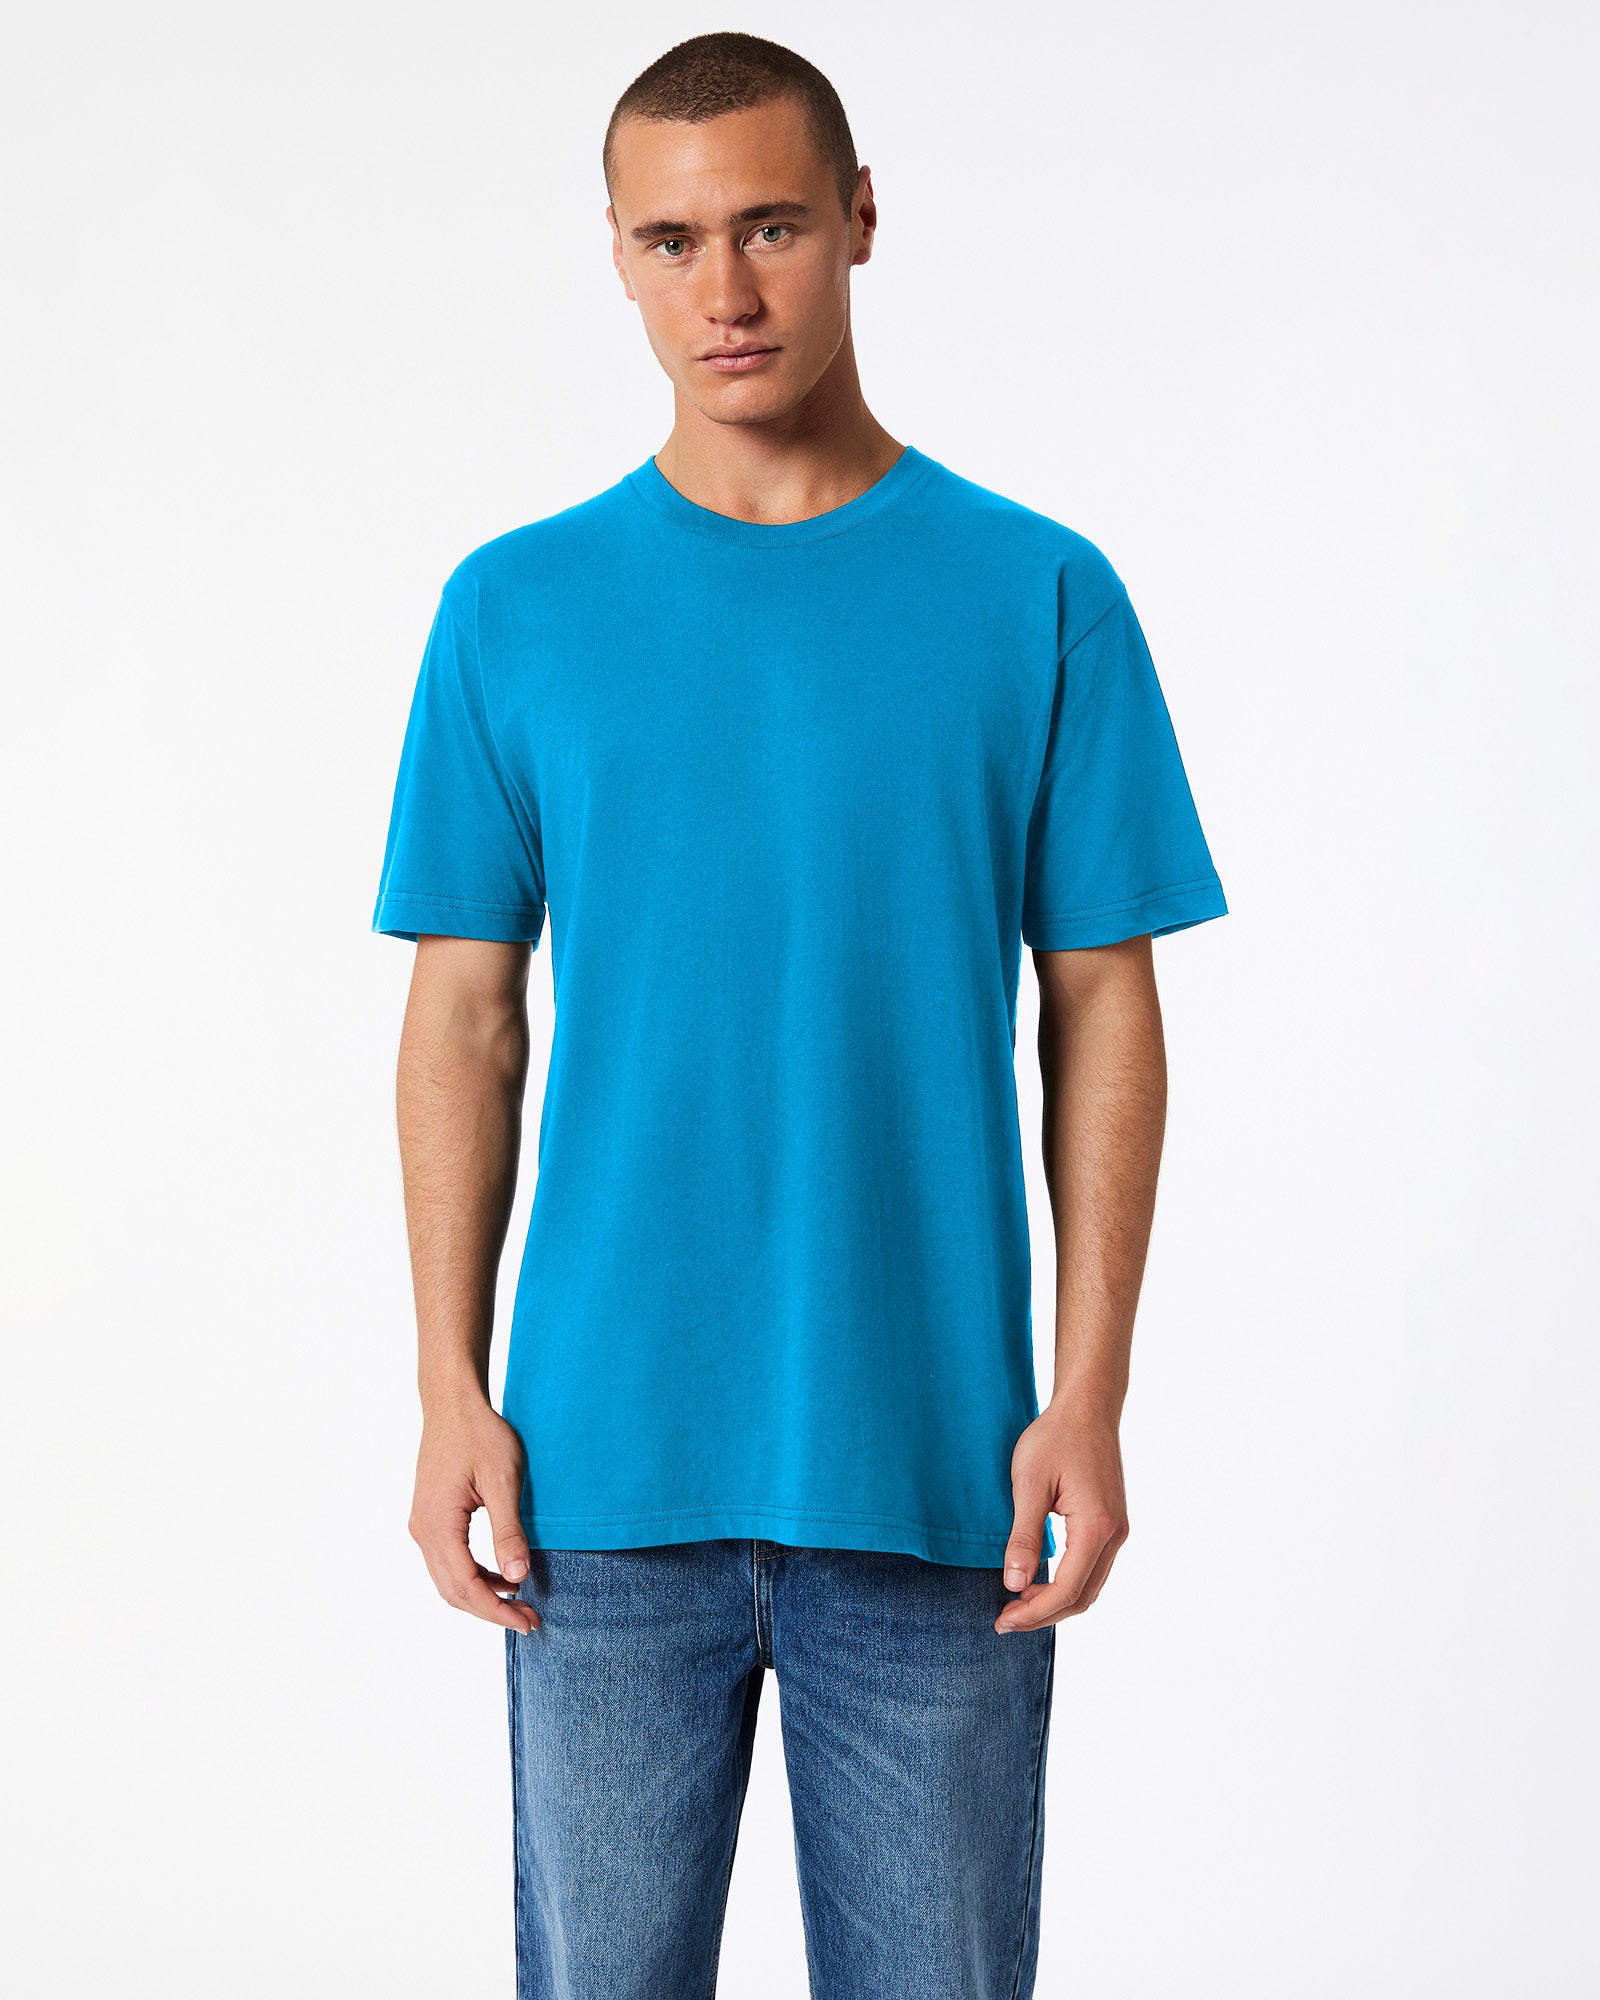 Fine Jersey Unisex Short Sleeve T-Shirt - Teal